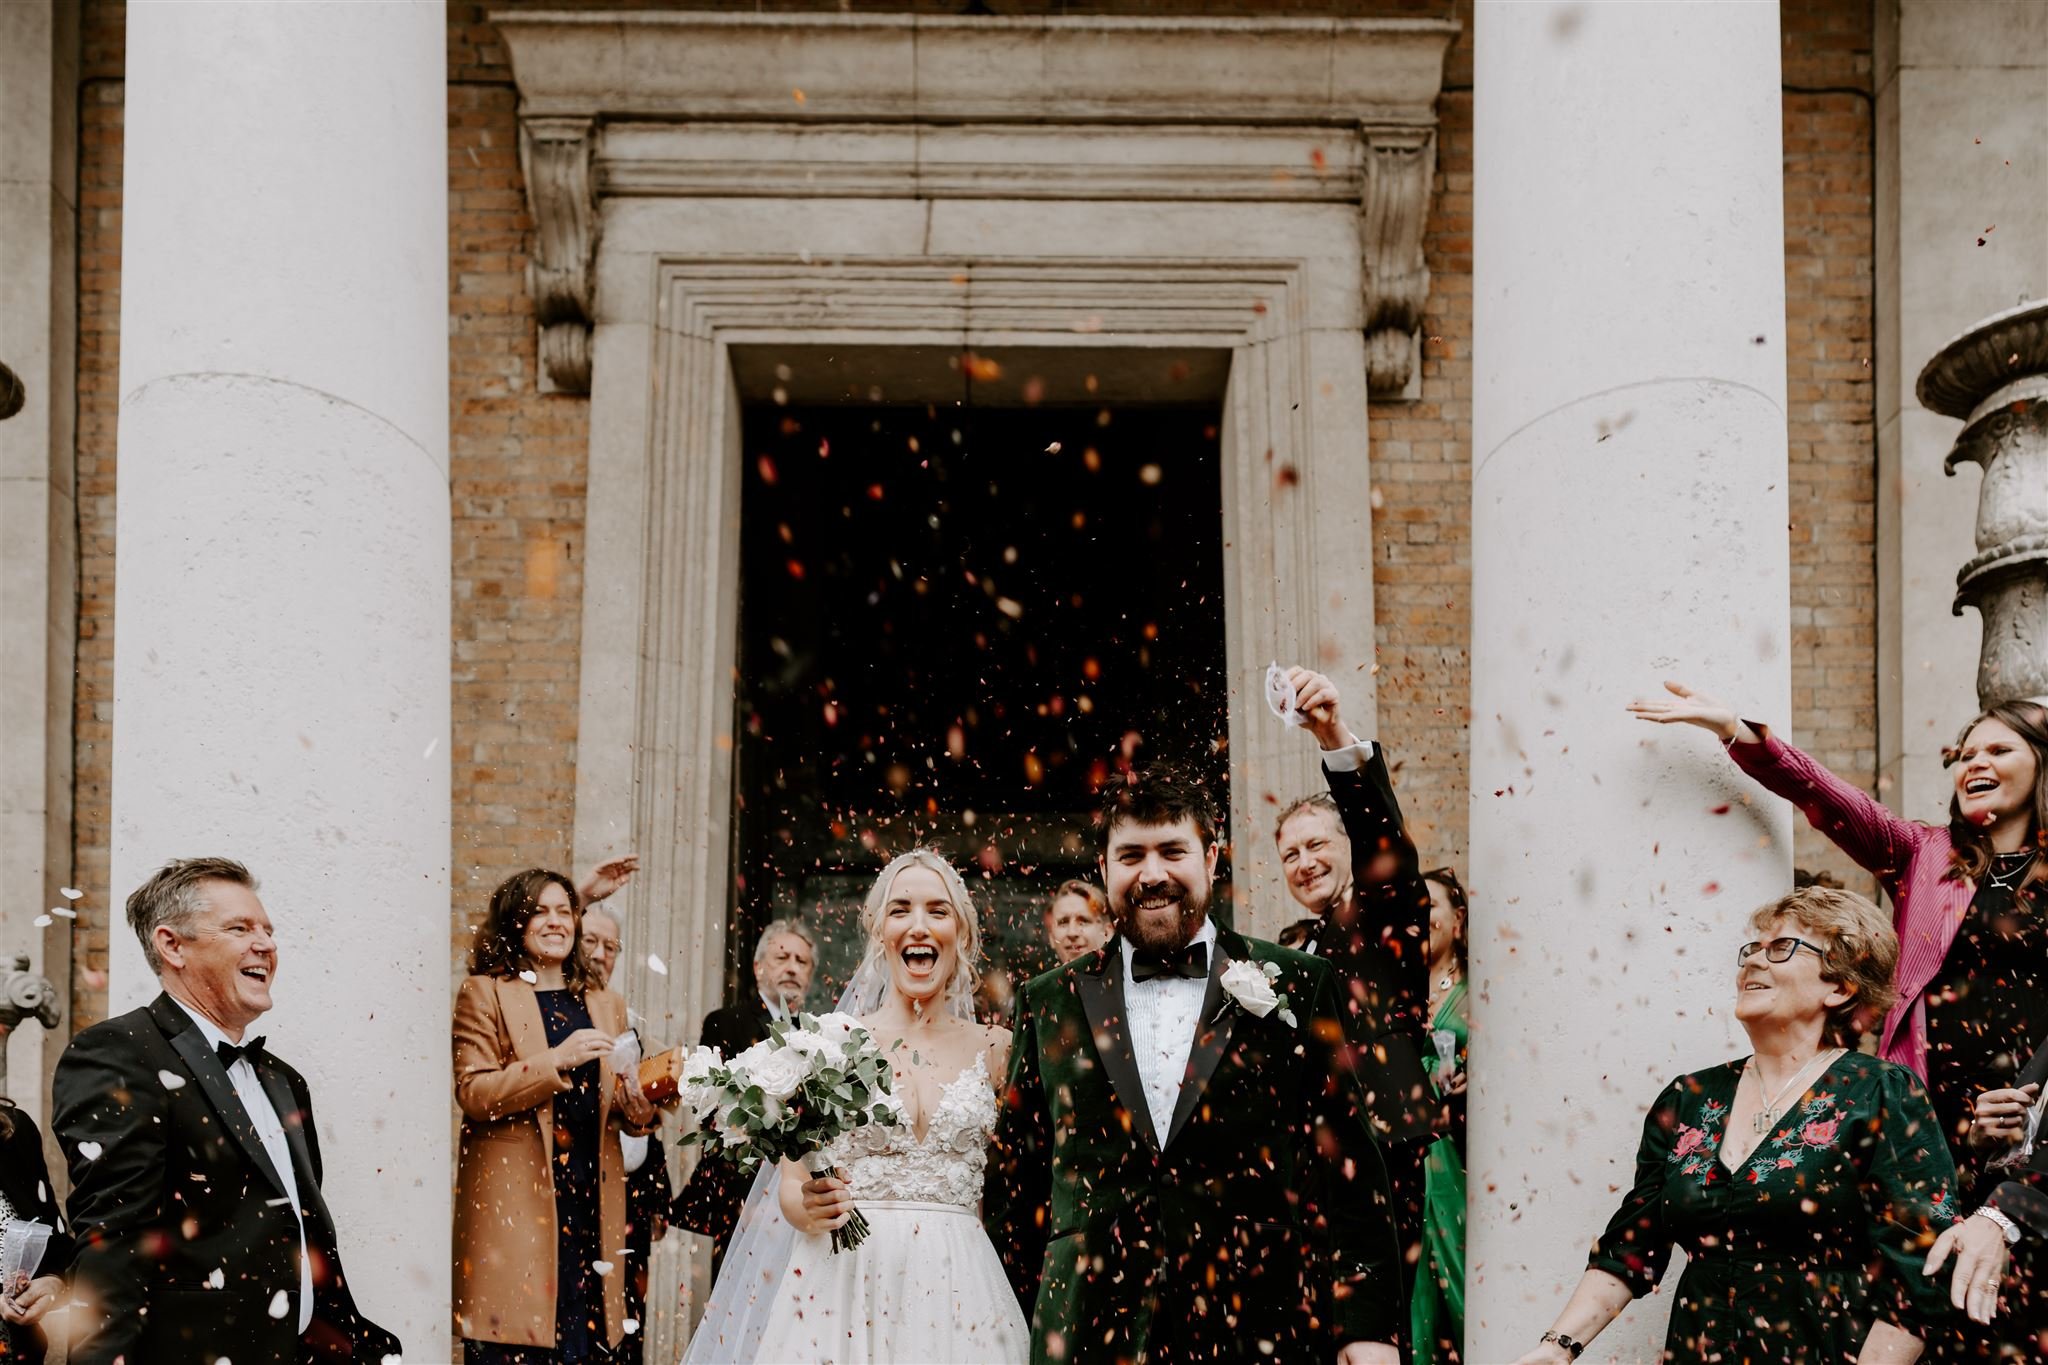 wedding confetti thrown Asylum Chapel Top London Wedding venue